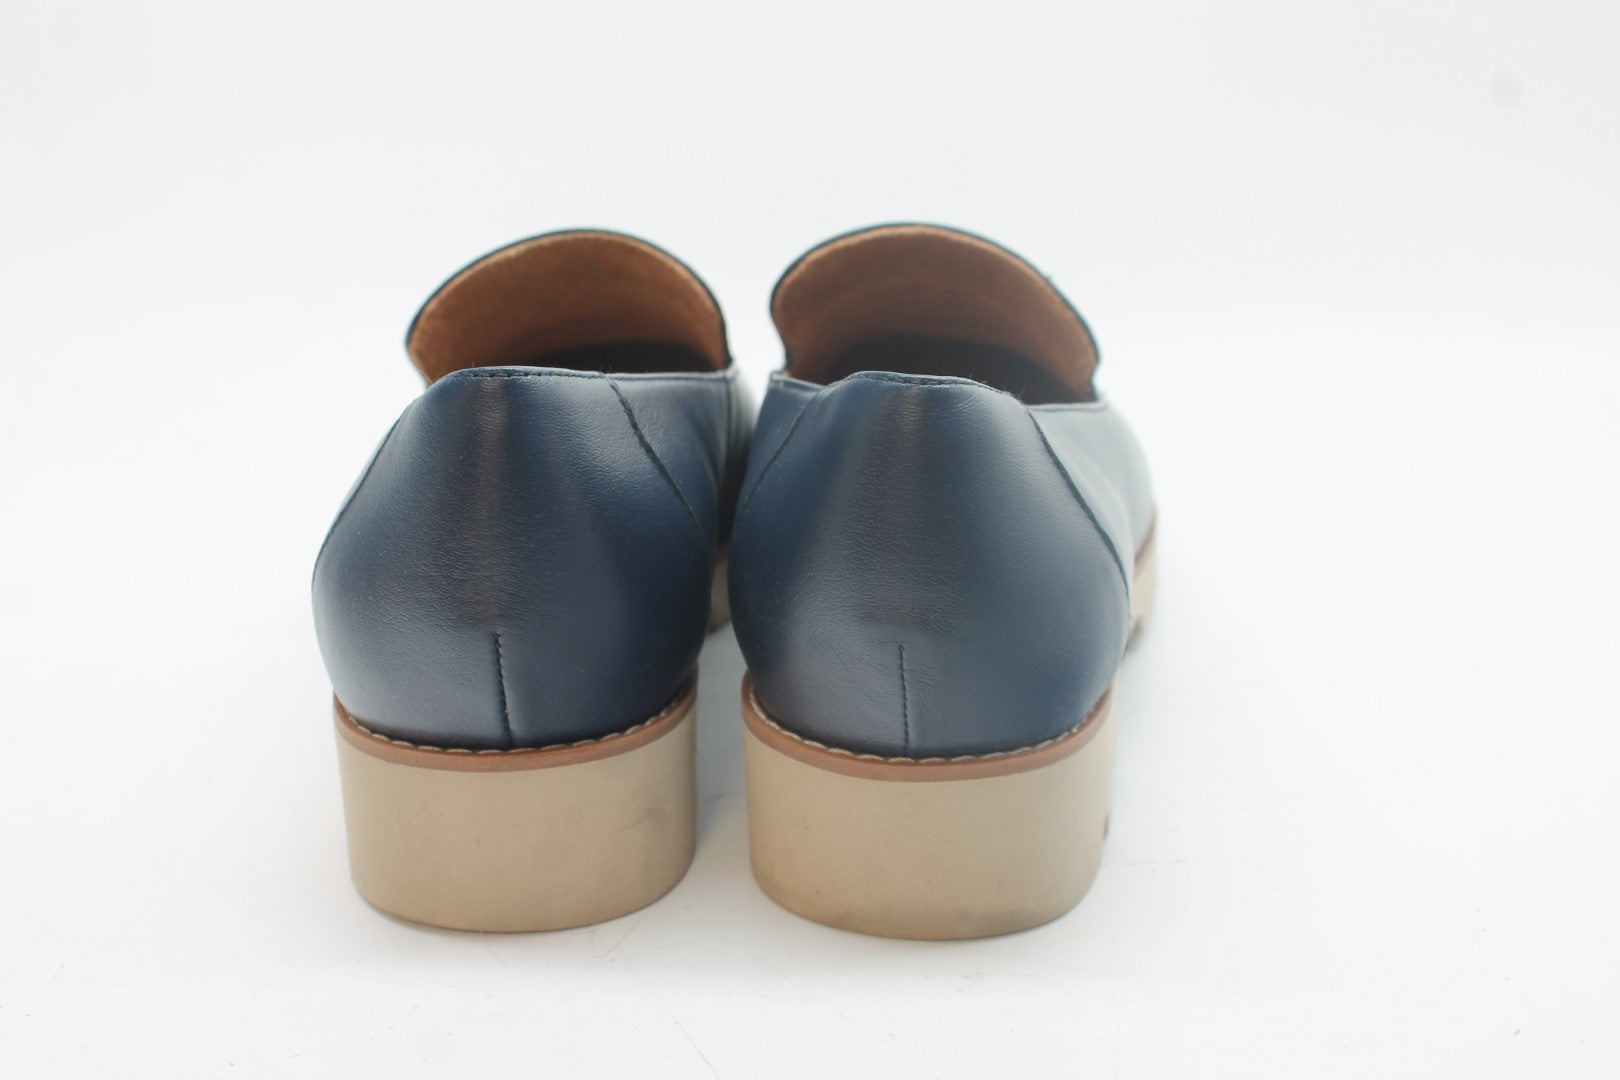 Vionic Kensley Women's Loafers, Floor Sample